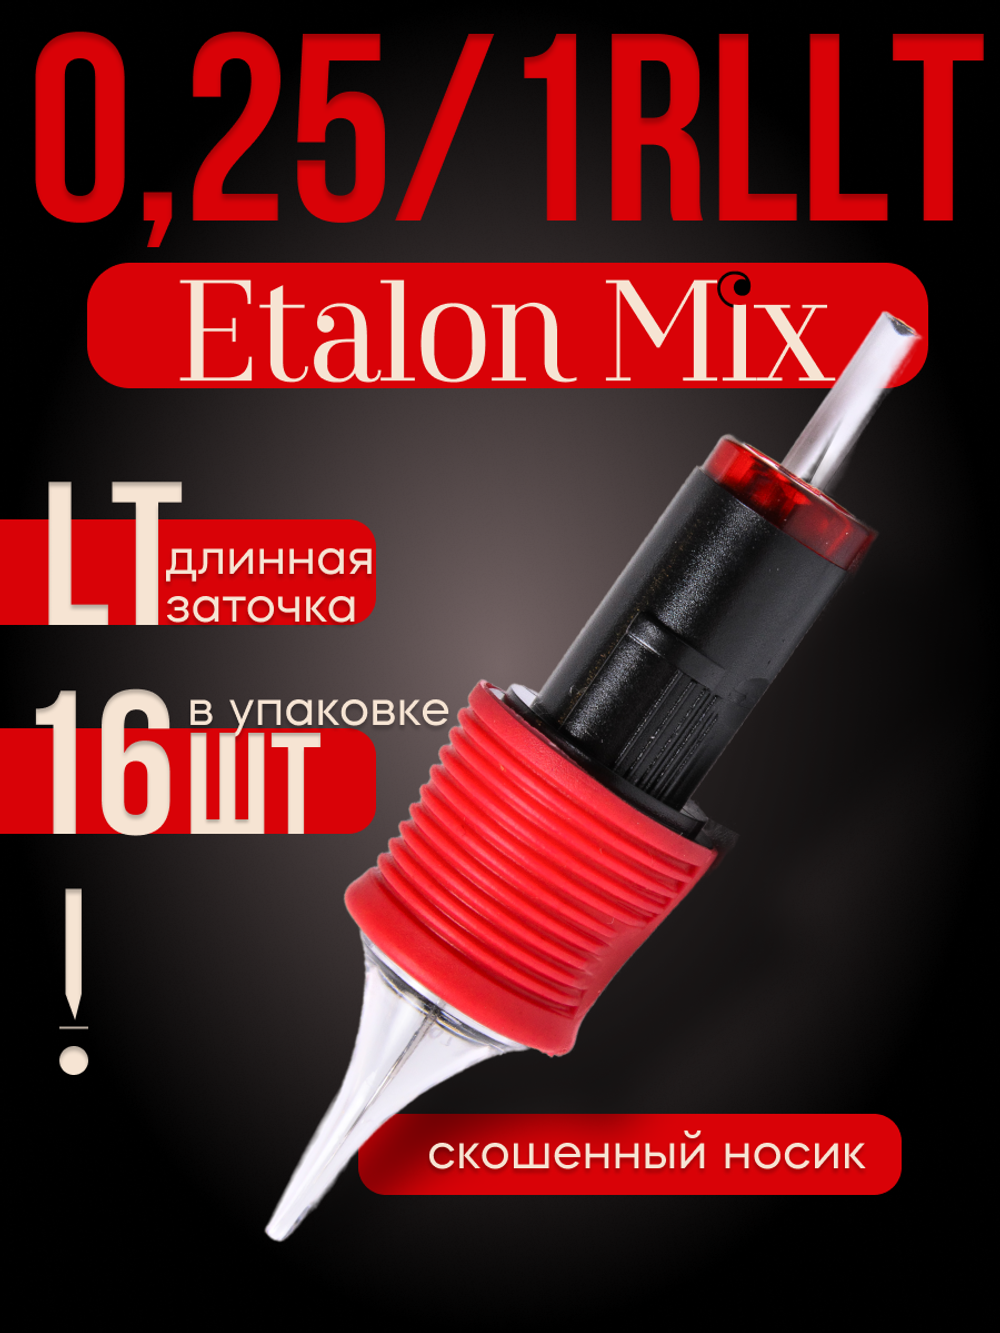 Картриджи для татуажа Etalon Mix 0.25/1RLLT 16 шт